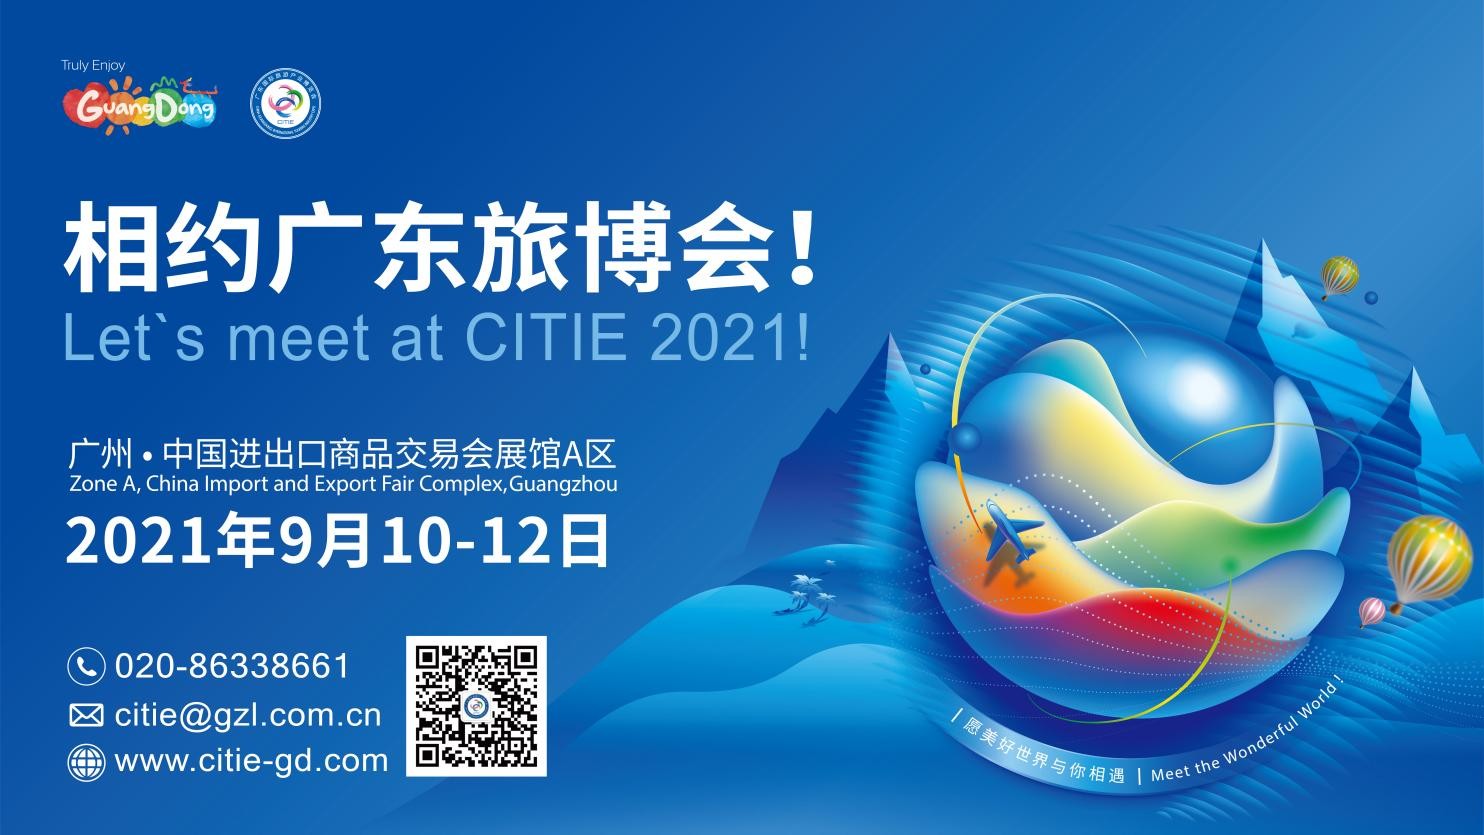 2021廣東旅博會將于9月10-12日如期舉行